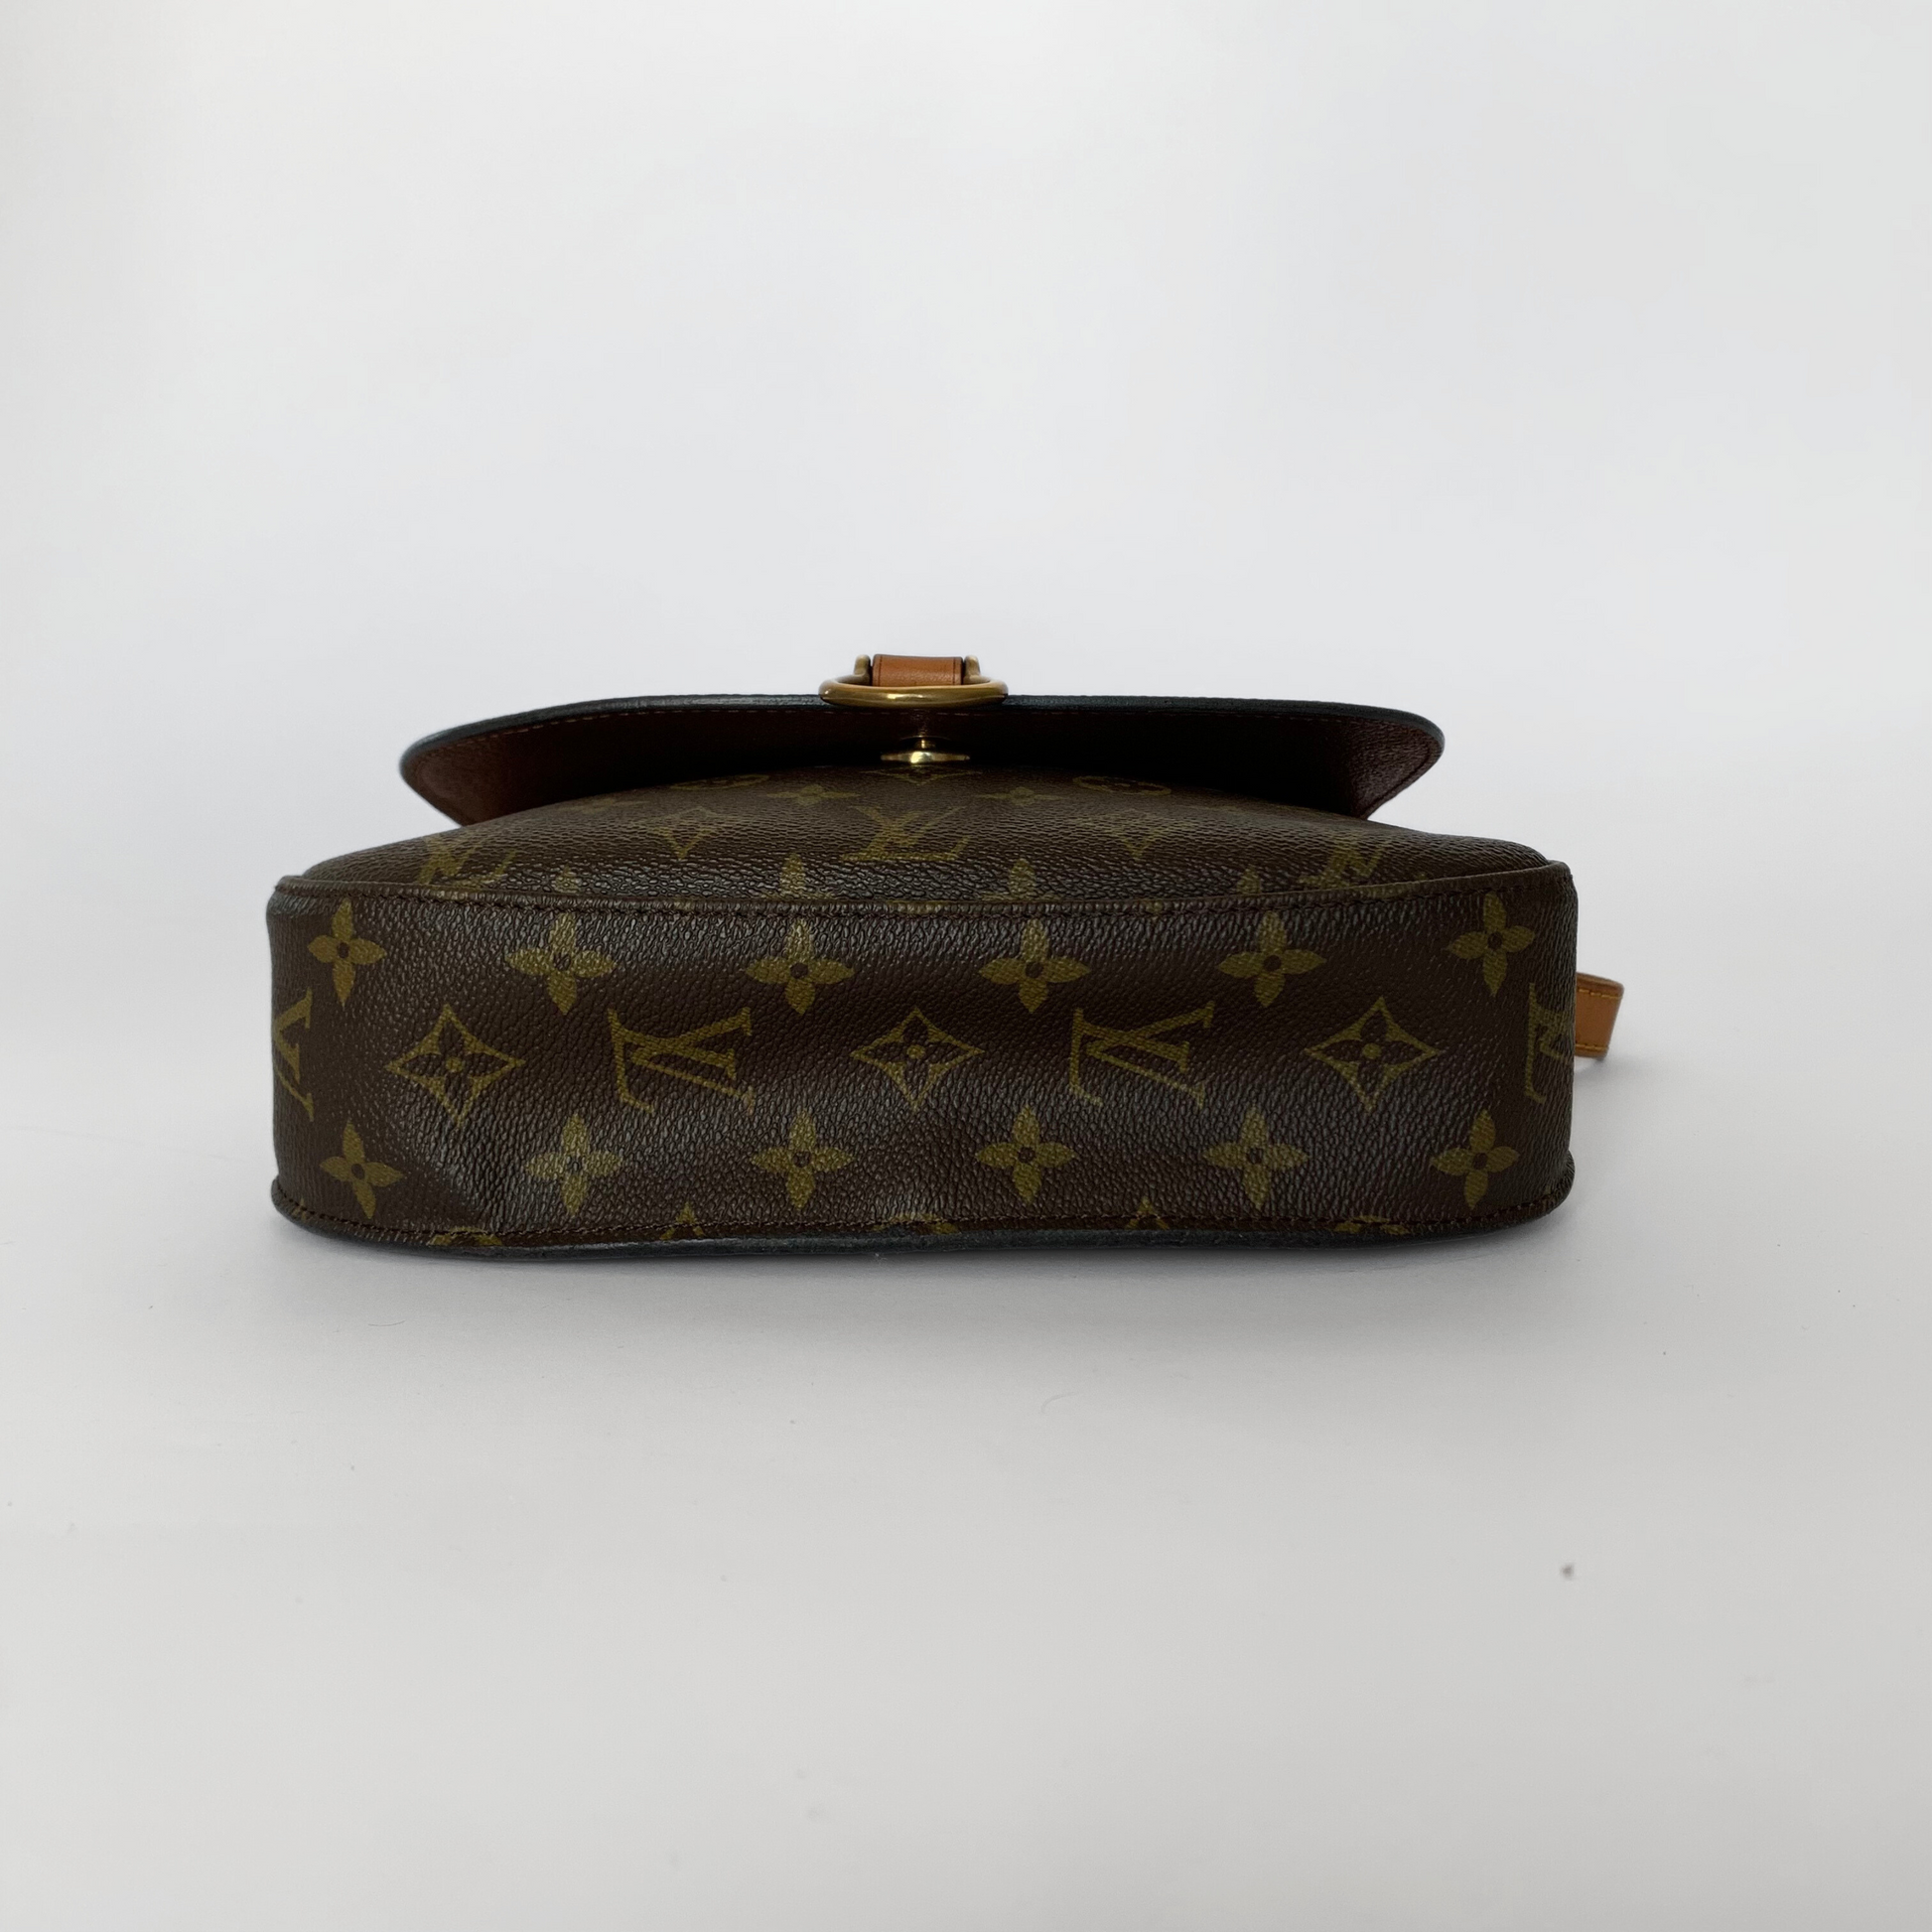 Louis Vuitton Louis Vuitton Saint Cloud GM in Monogram Canvas - Crossbody bags - Etoile Luxury Vintage